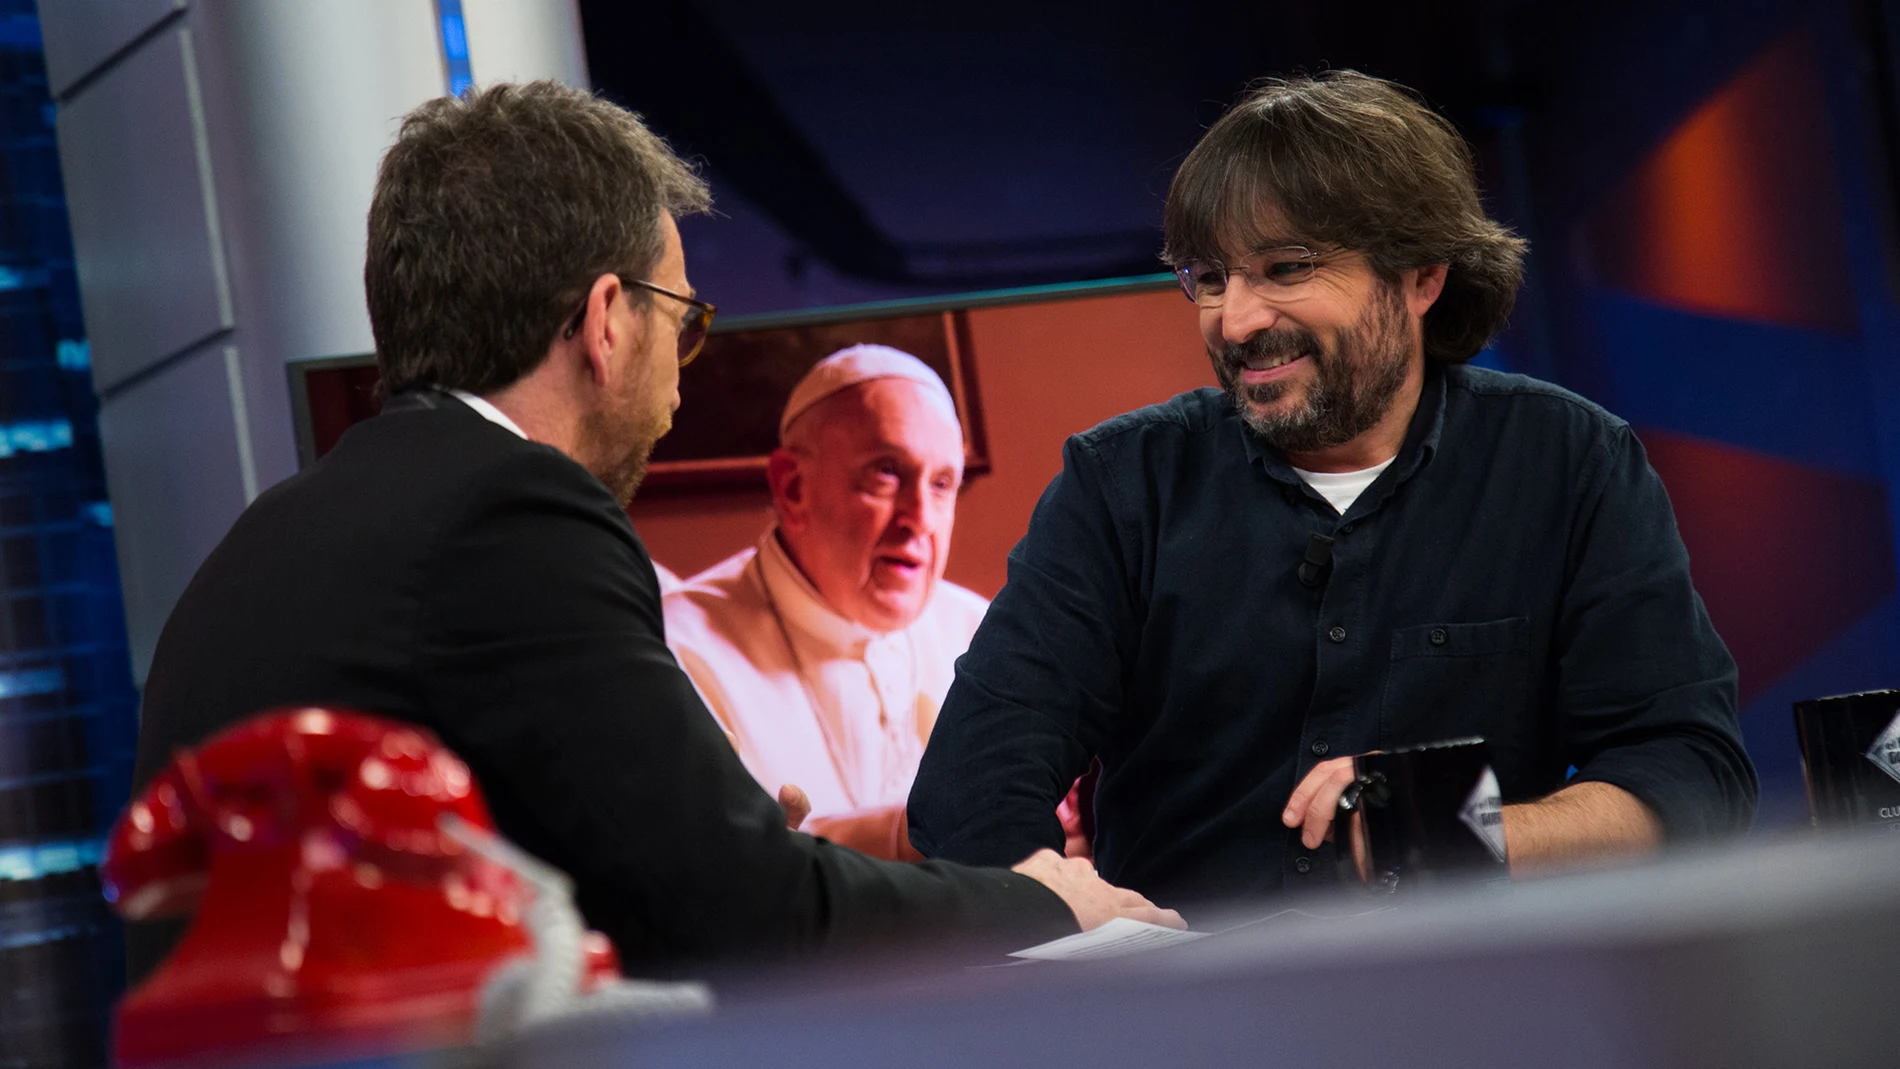 "Me puse a llorar", Jordi Évole cuenta en 'El Hormiguero 3.0' cómo descargó la tensión tras la entrevista al Papa Francisco